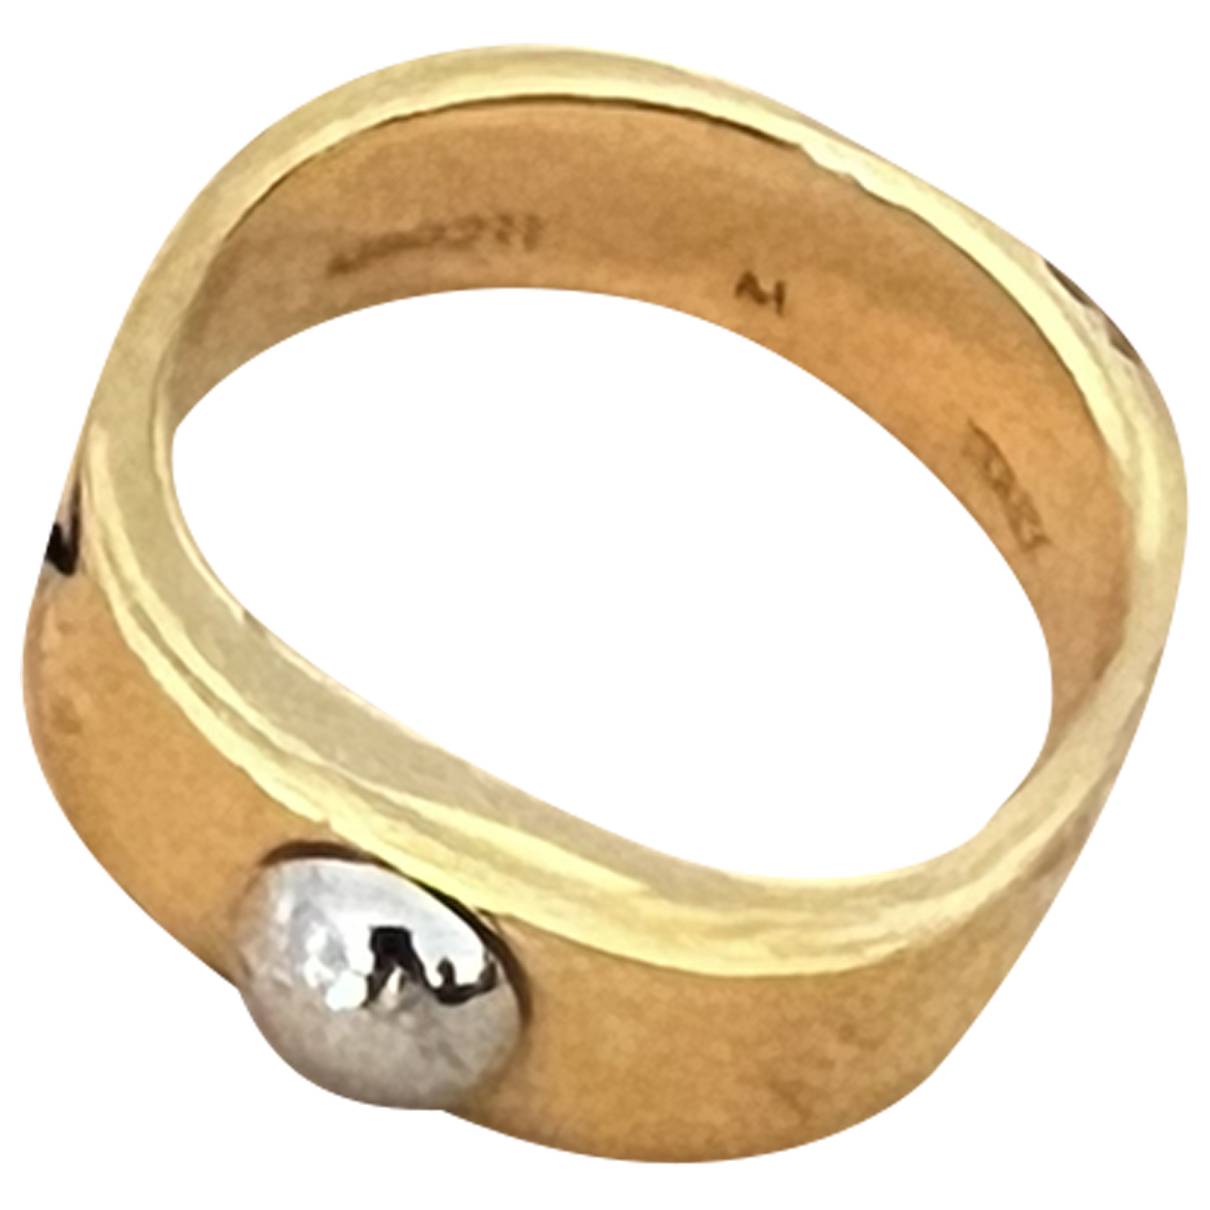 Nanogram ring Louis Vuitton Gold size 6 US in Metal - 32651522